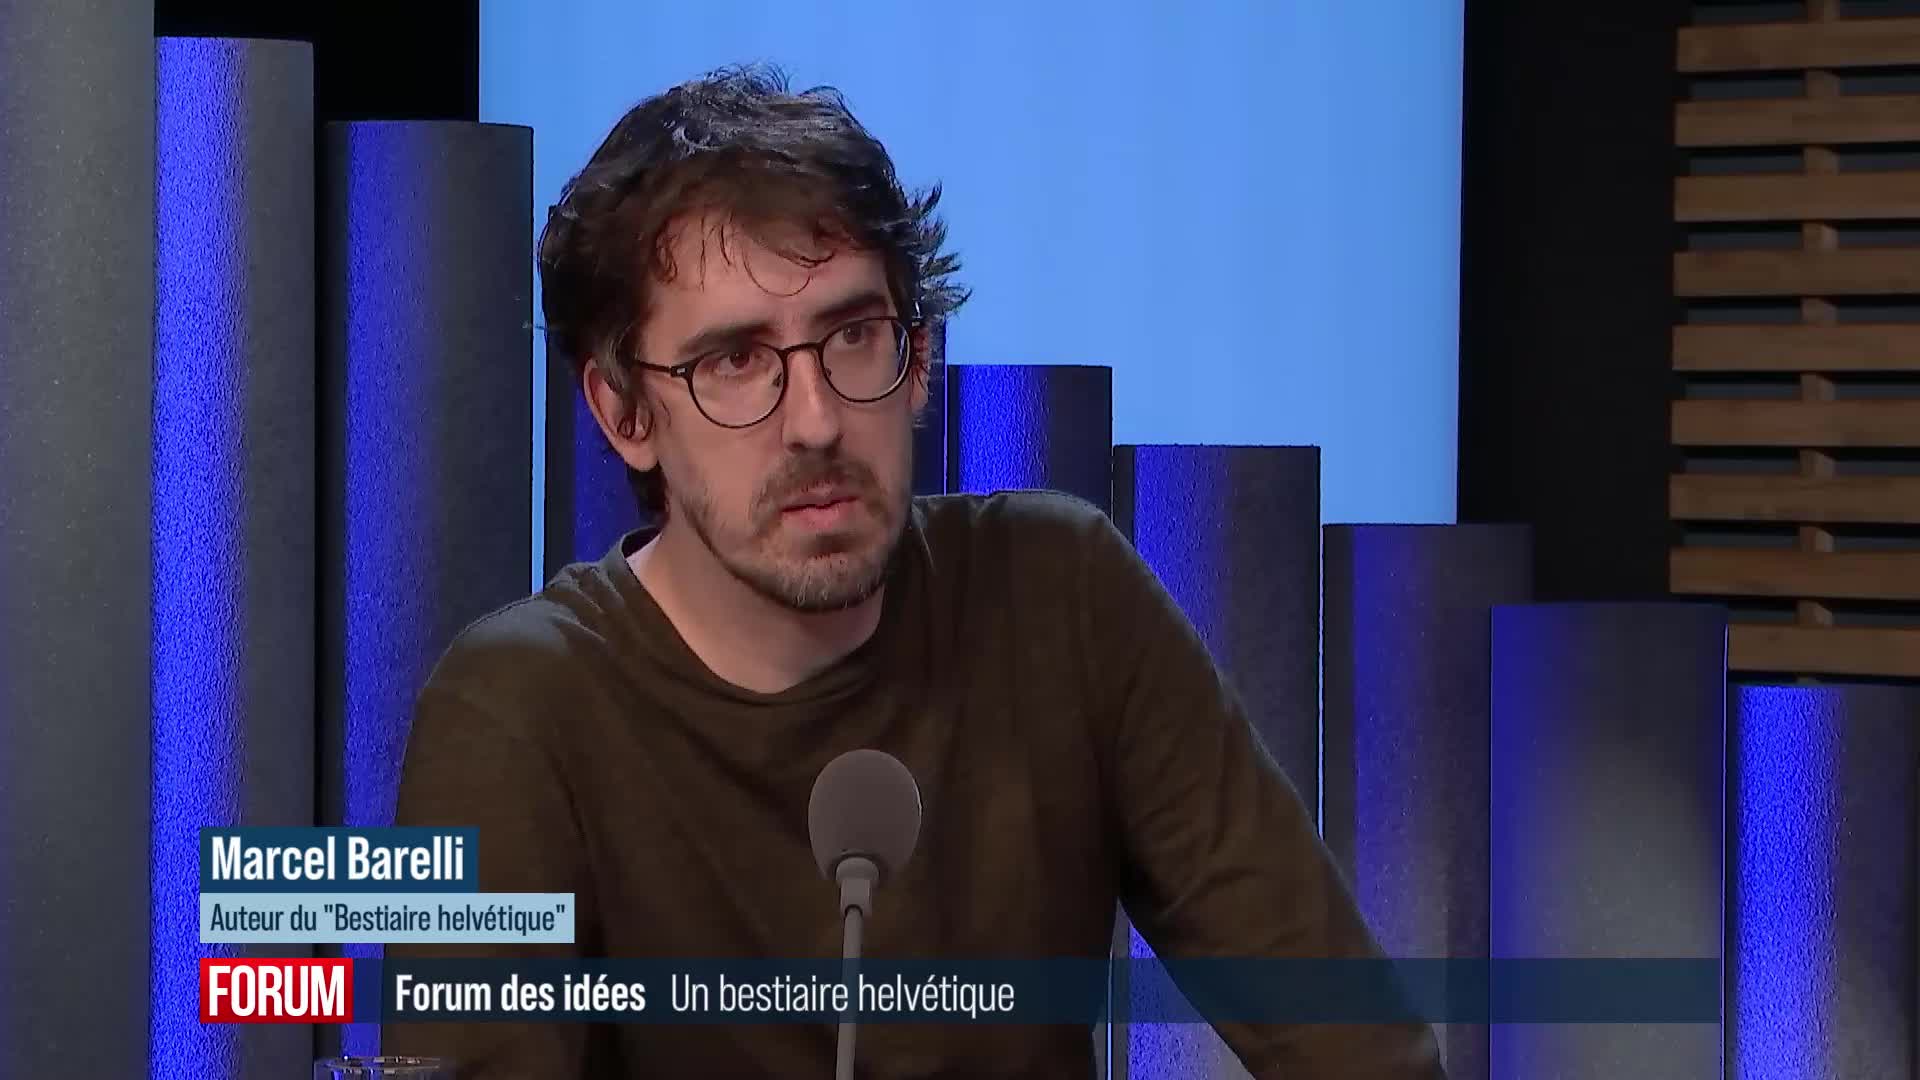 Forum des idées - Le réalisateur Marcel Barelli signe un "Bestiaire helvétique"